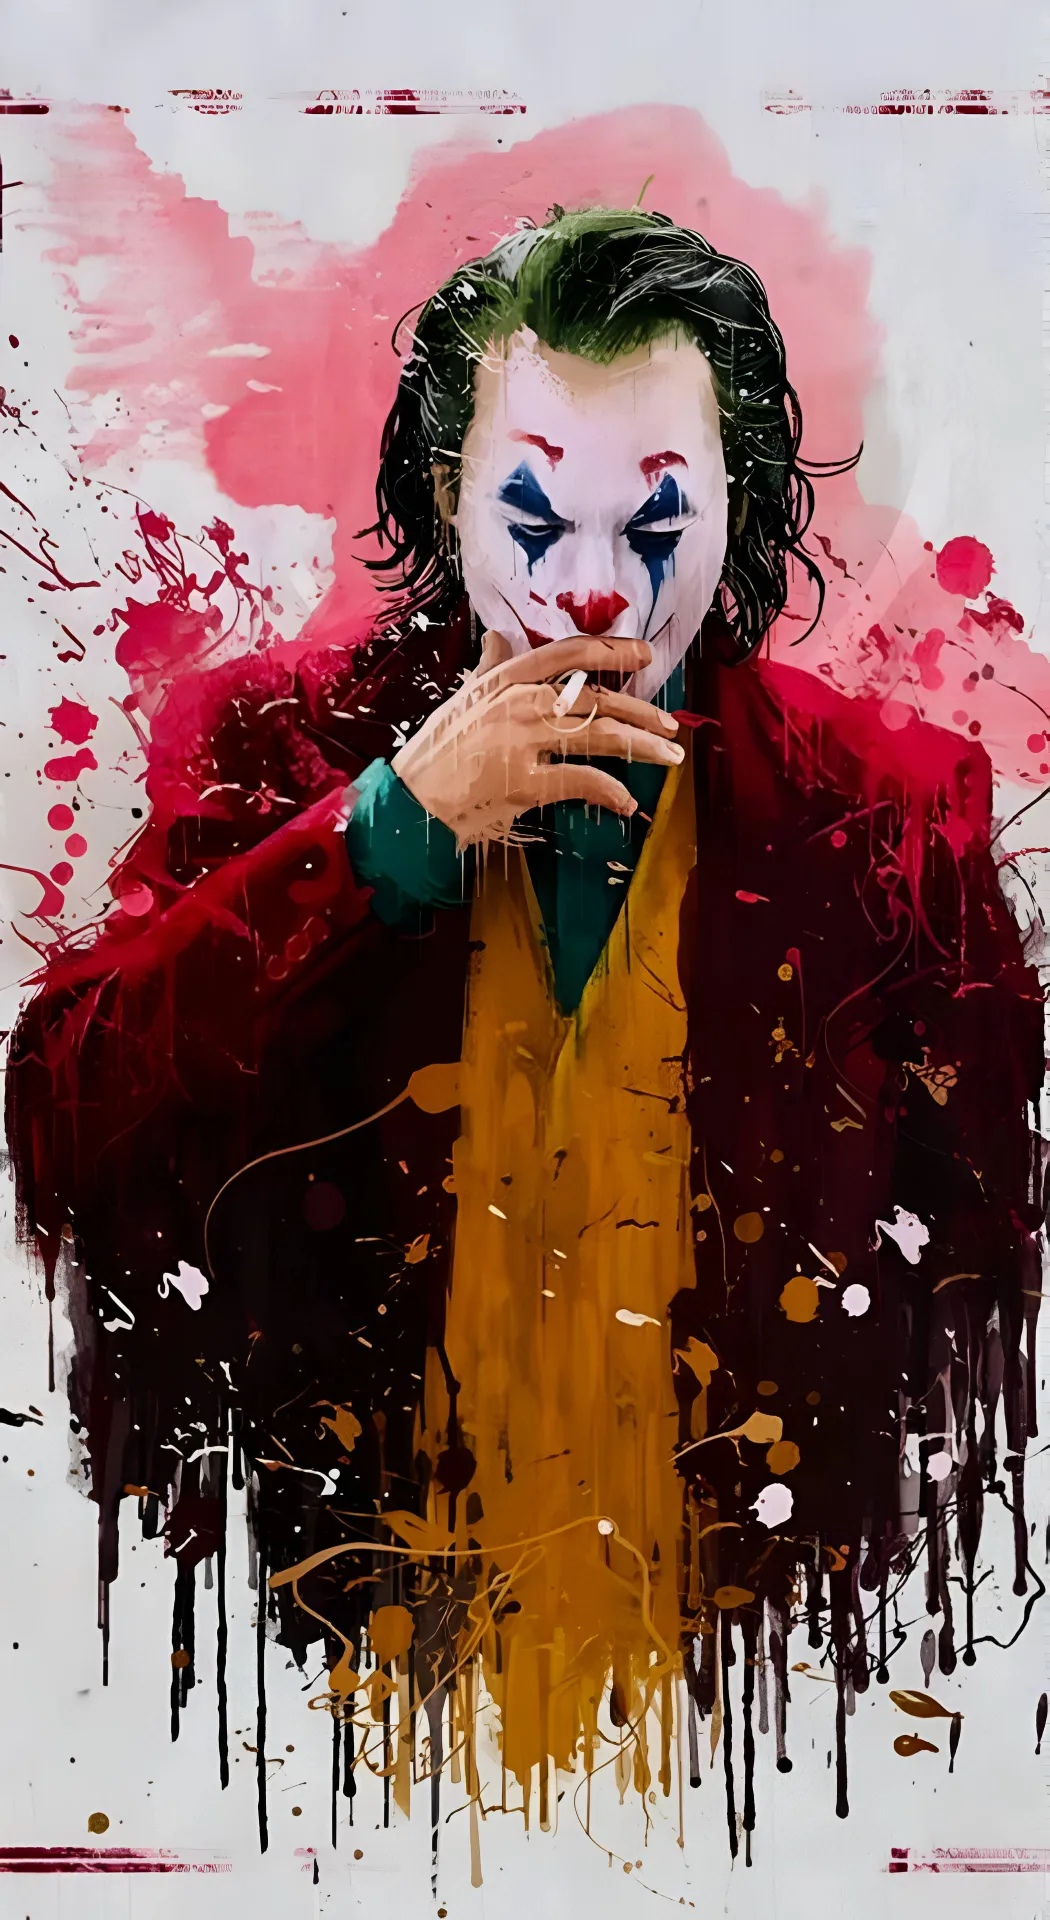 thumb for Joker Painting Wallpaper